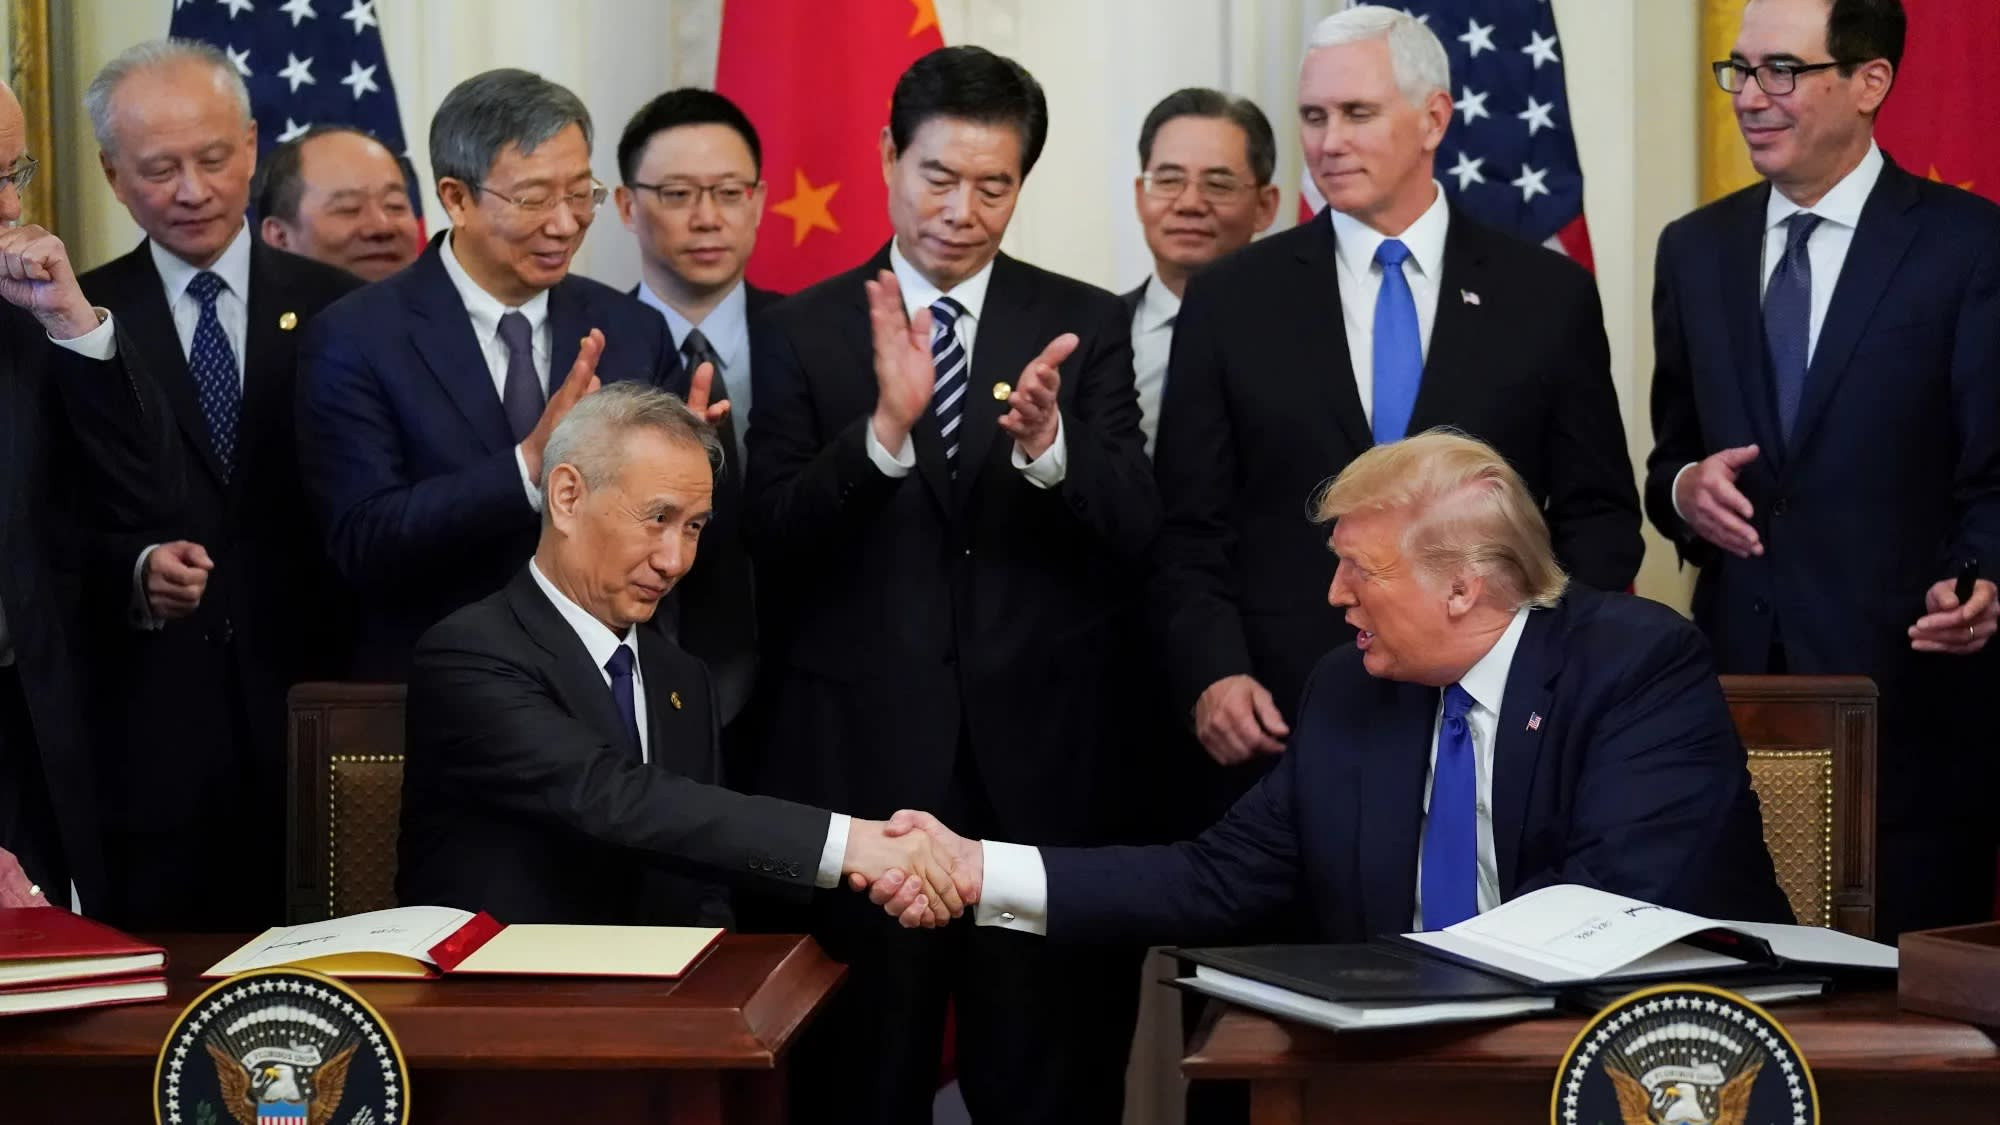 व्यापार युद्ध रोक्न चीन र अमेरिका सहमत, कस्ताे पर्छ विश्व अर्थव्यवस्थामा प्रभाव ?